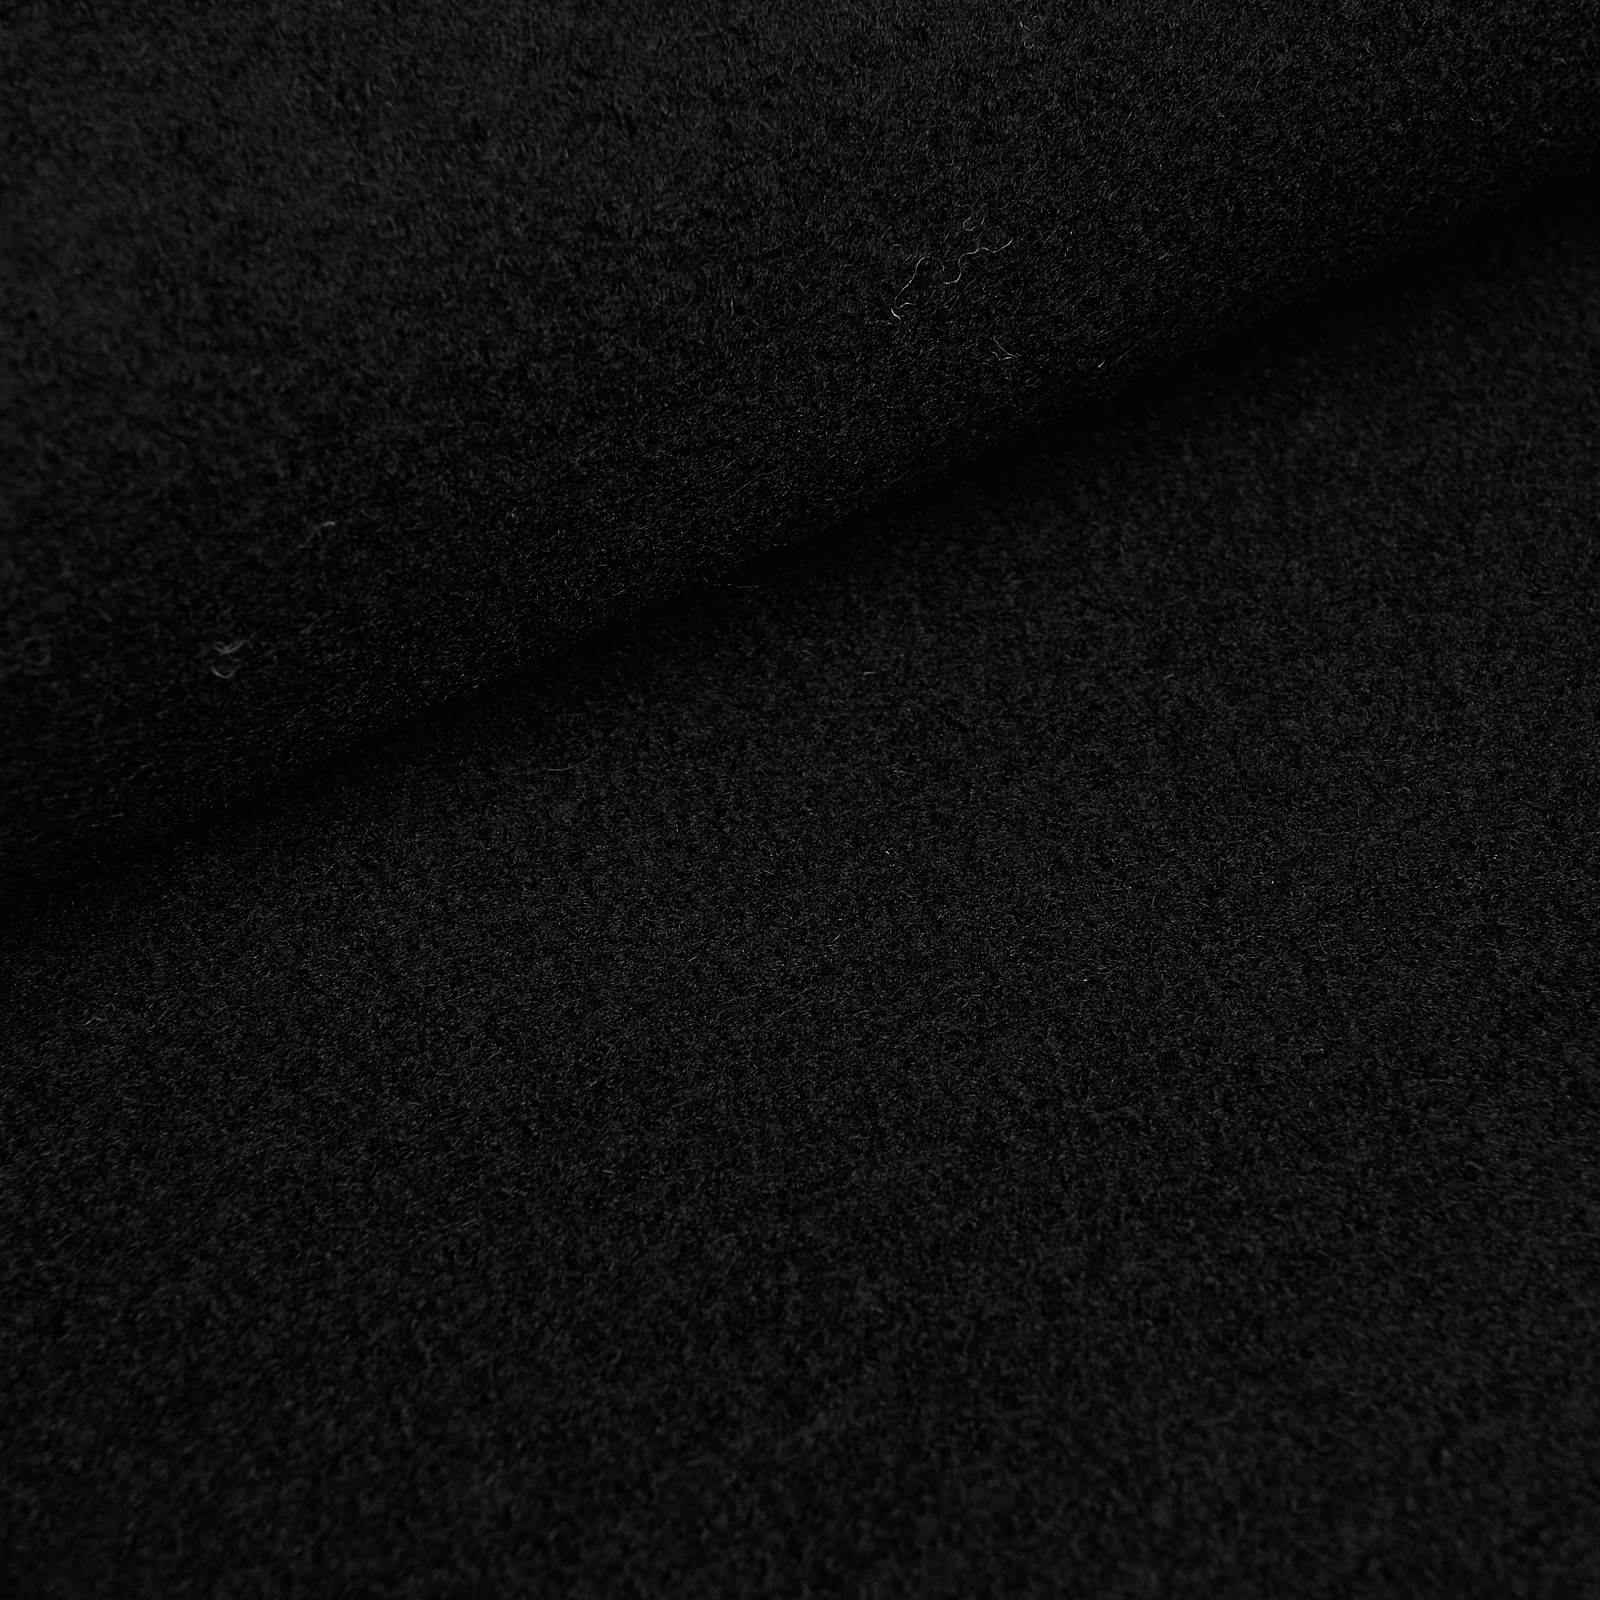 Fabian - boiled wool / loden fabric - 100% virgin wool (black)